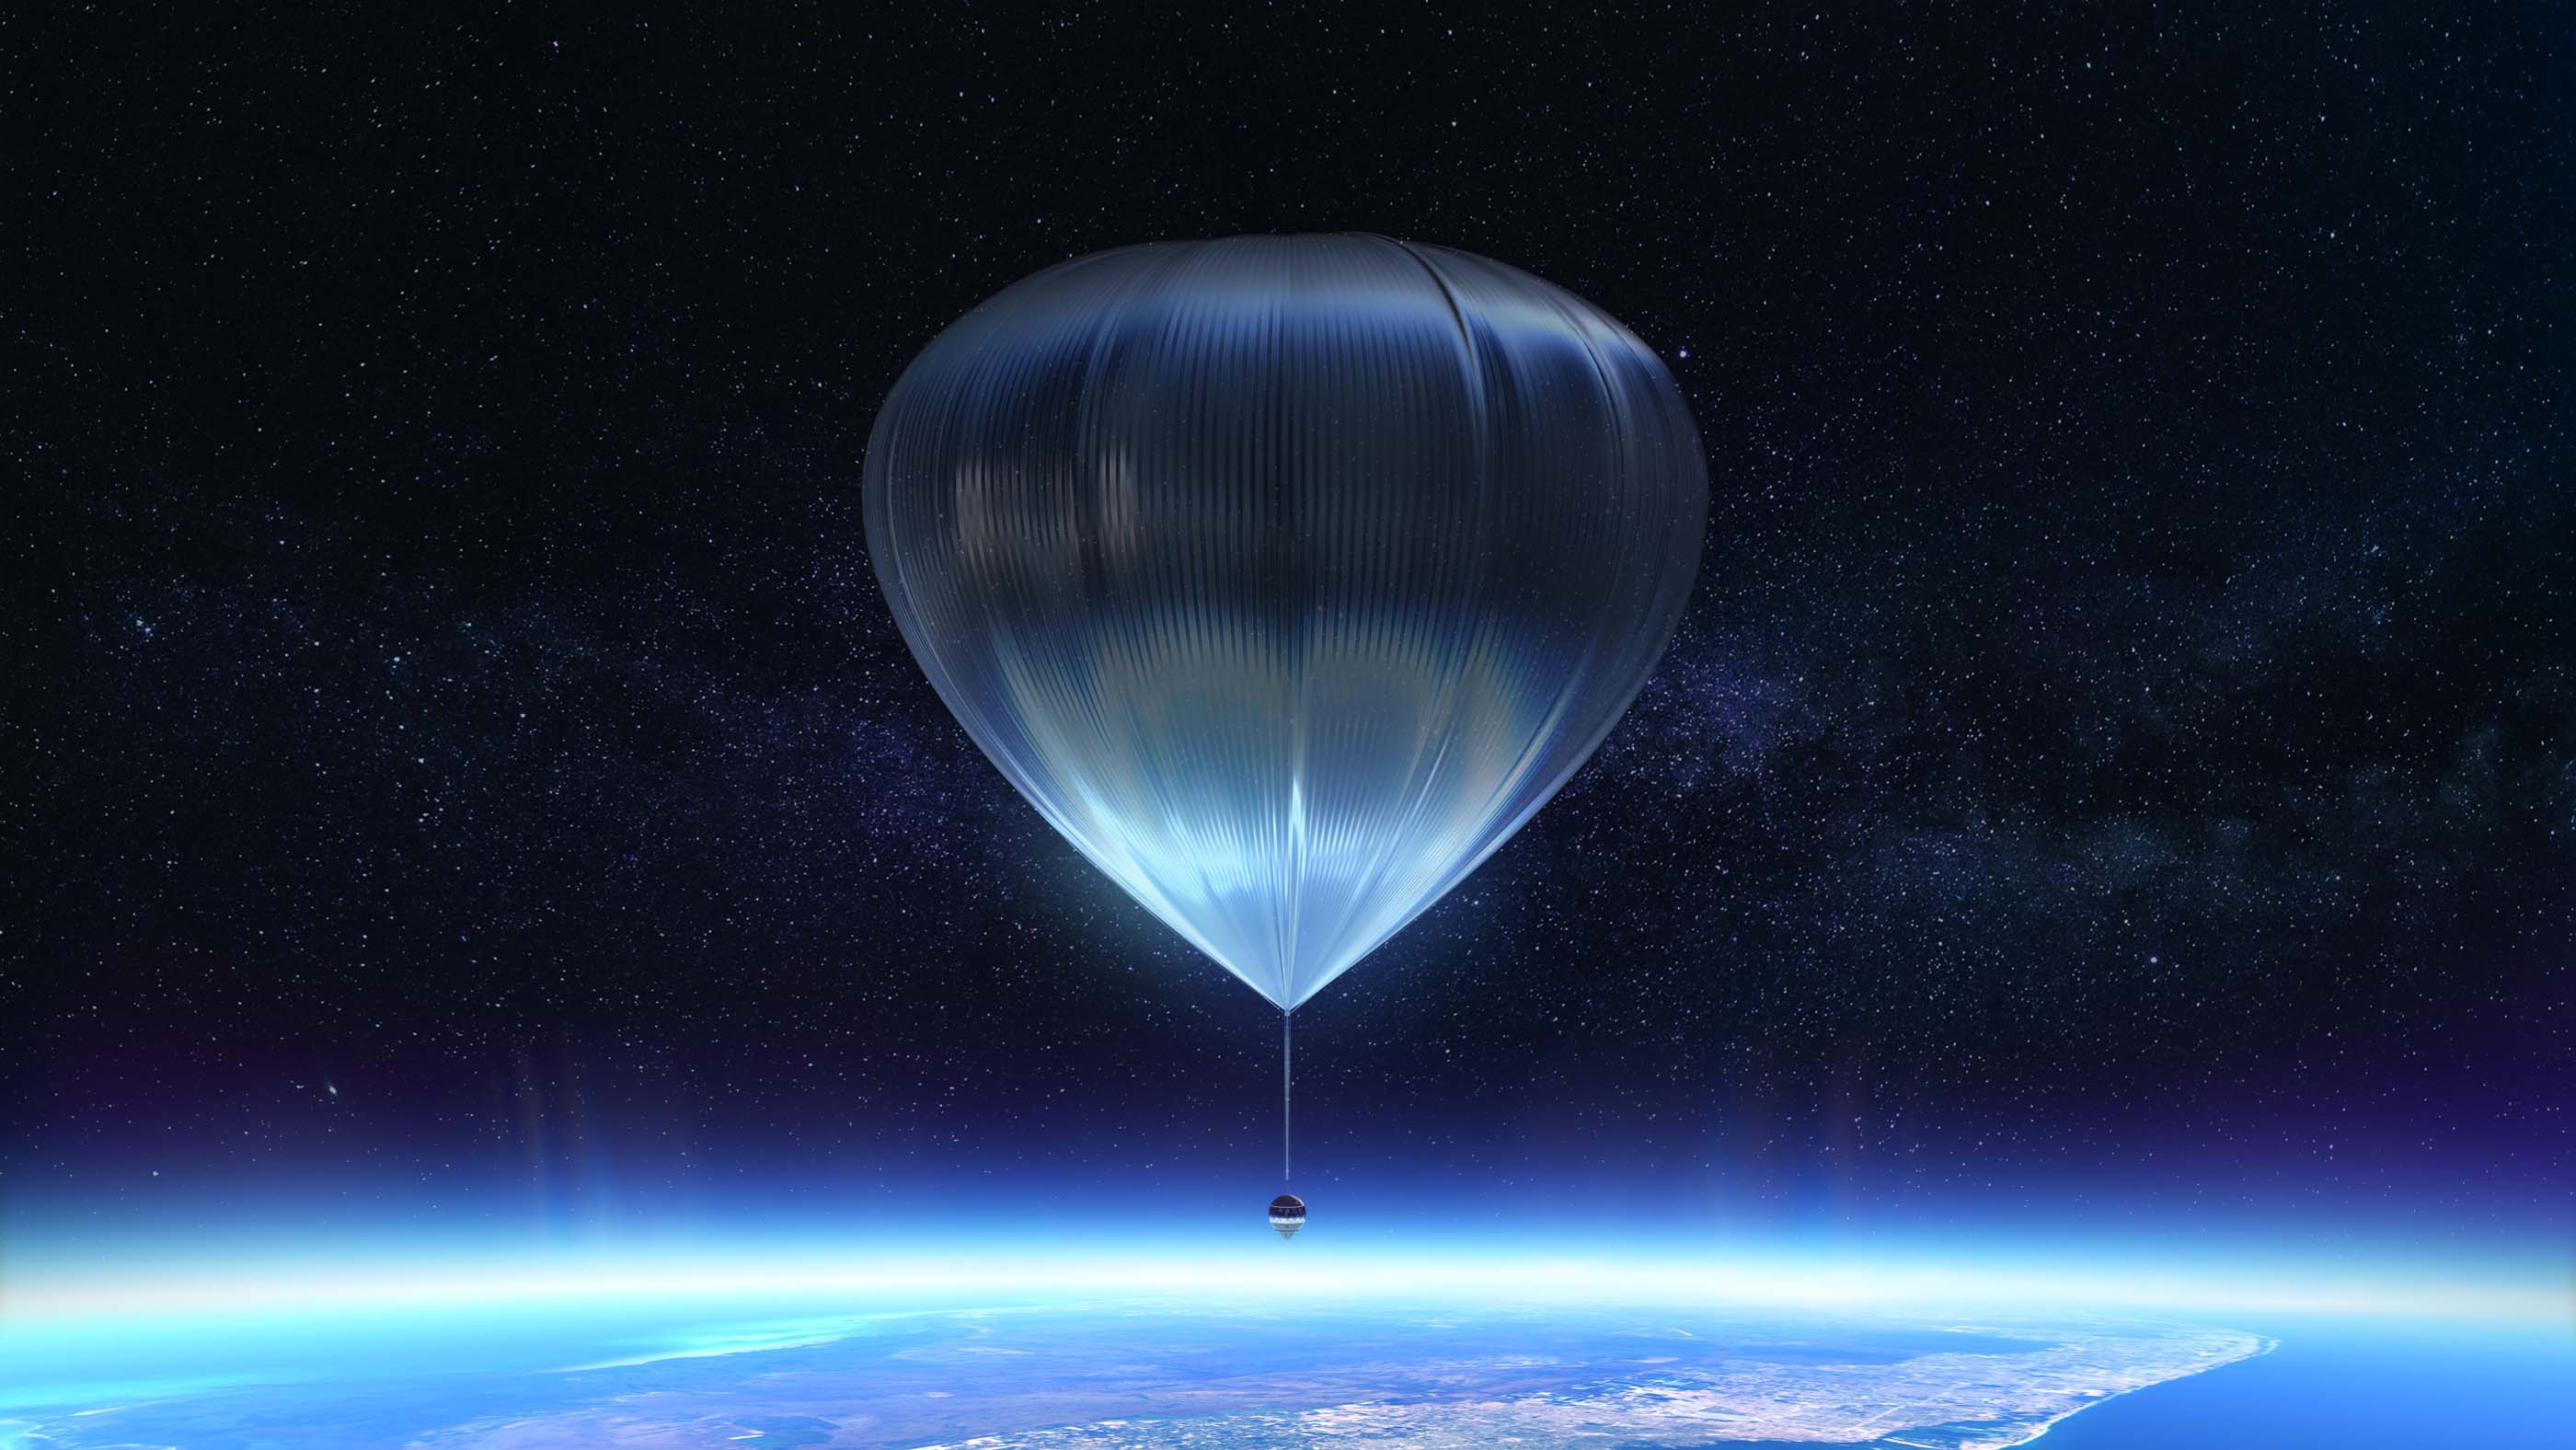 大型气球将宇宙飞船抬升到地球表面之上